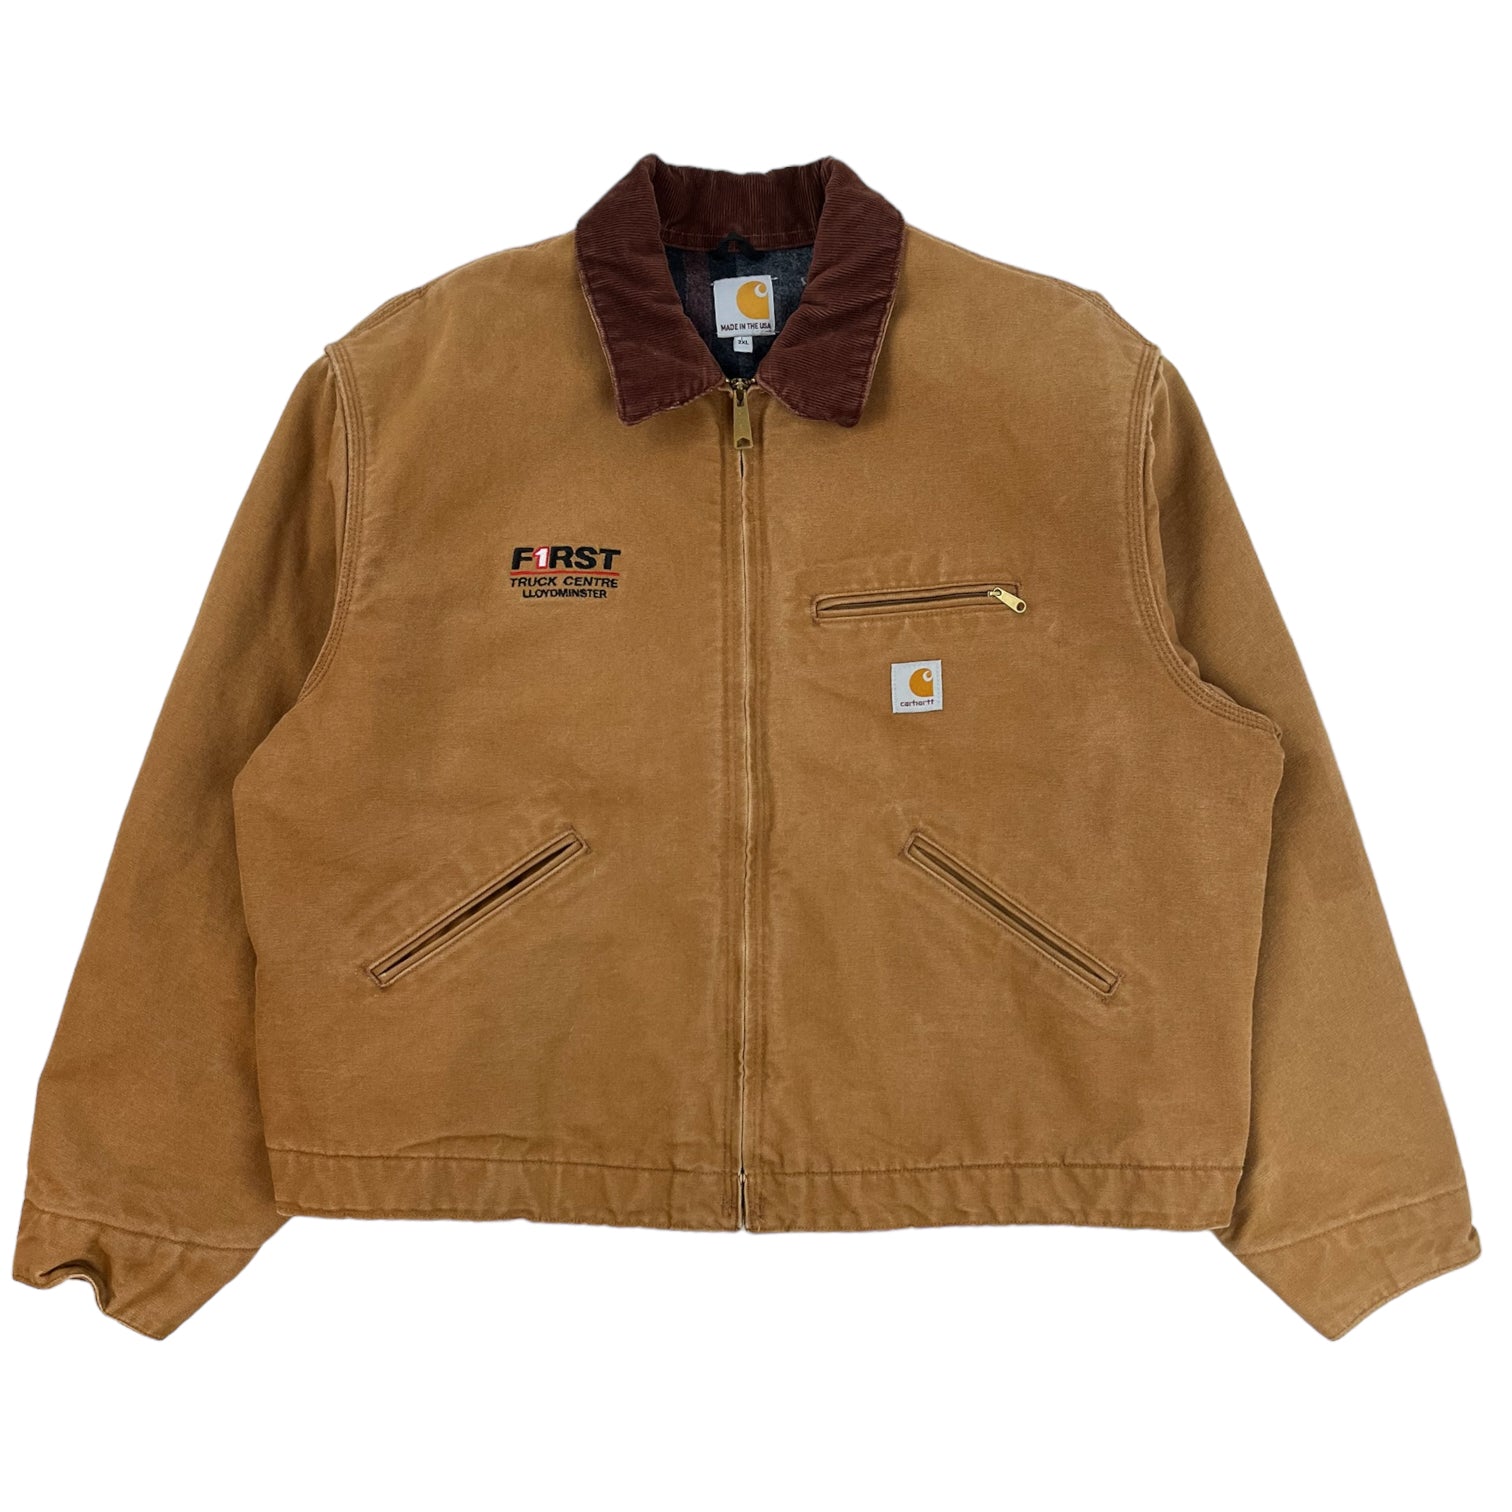 Vintage Carhartt Detroit jacketカラーベージュ